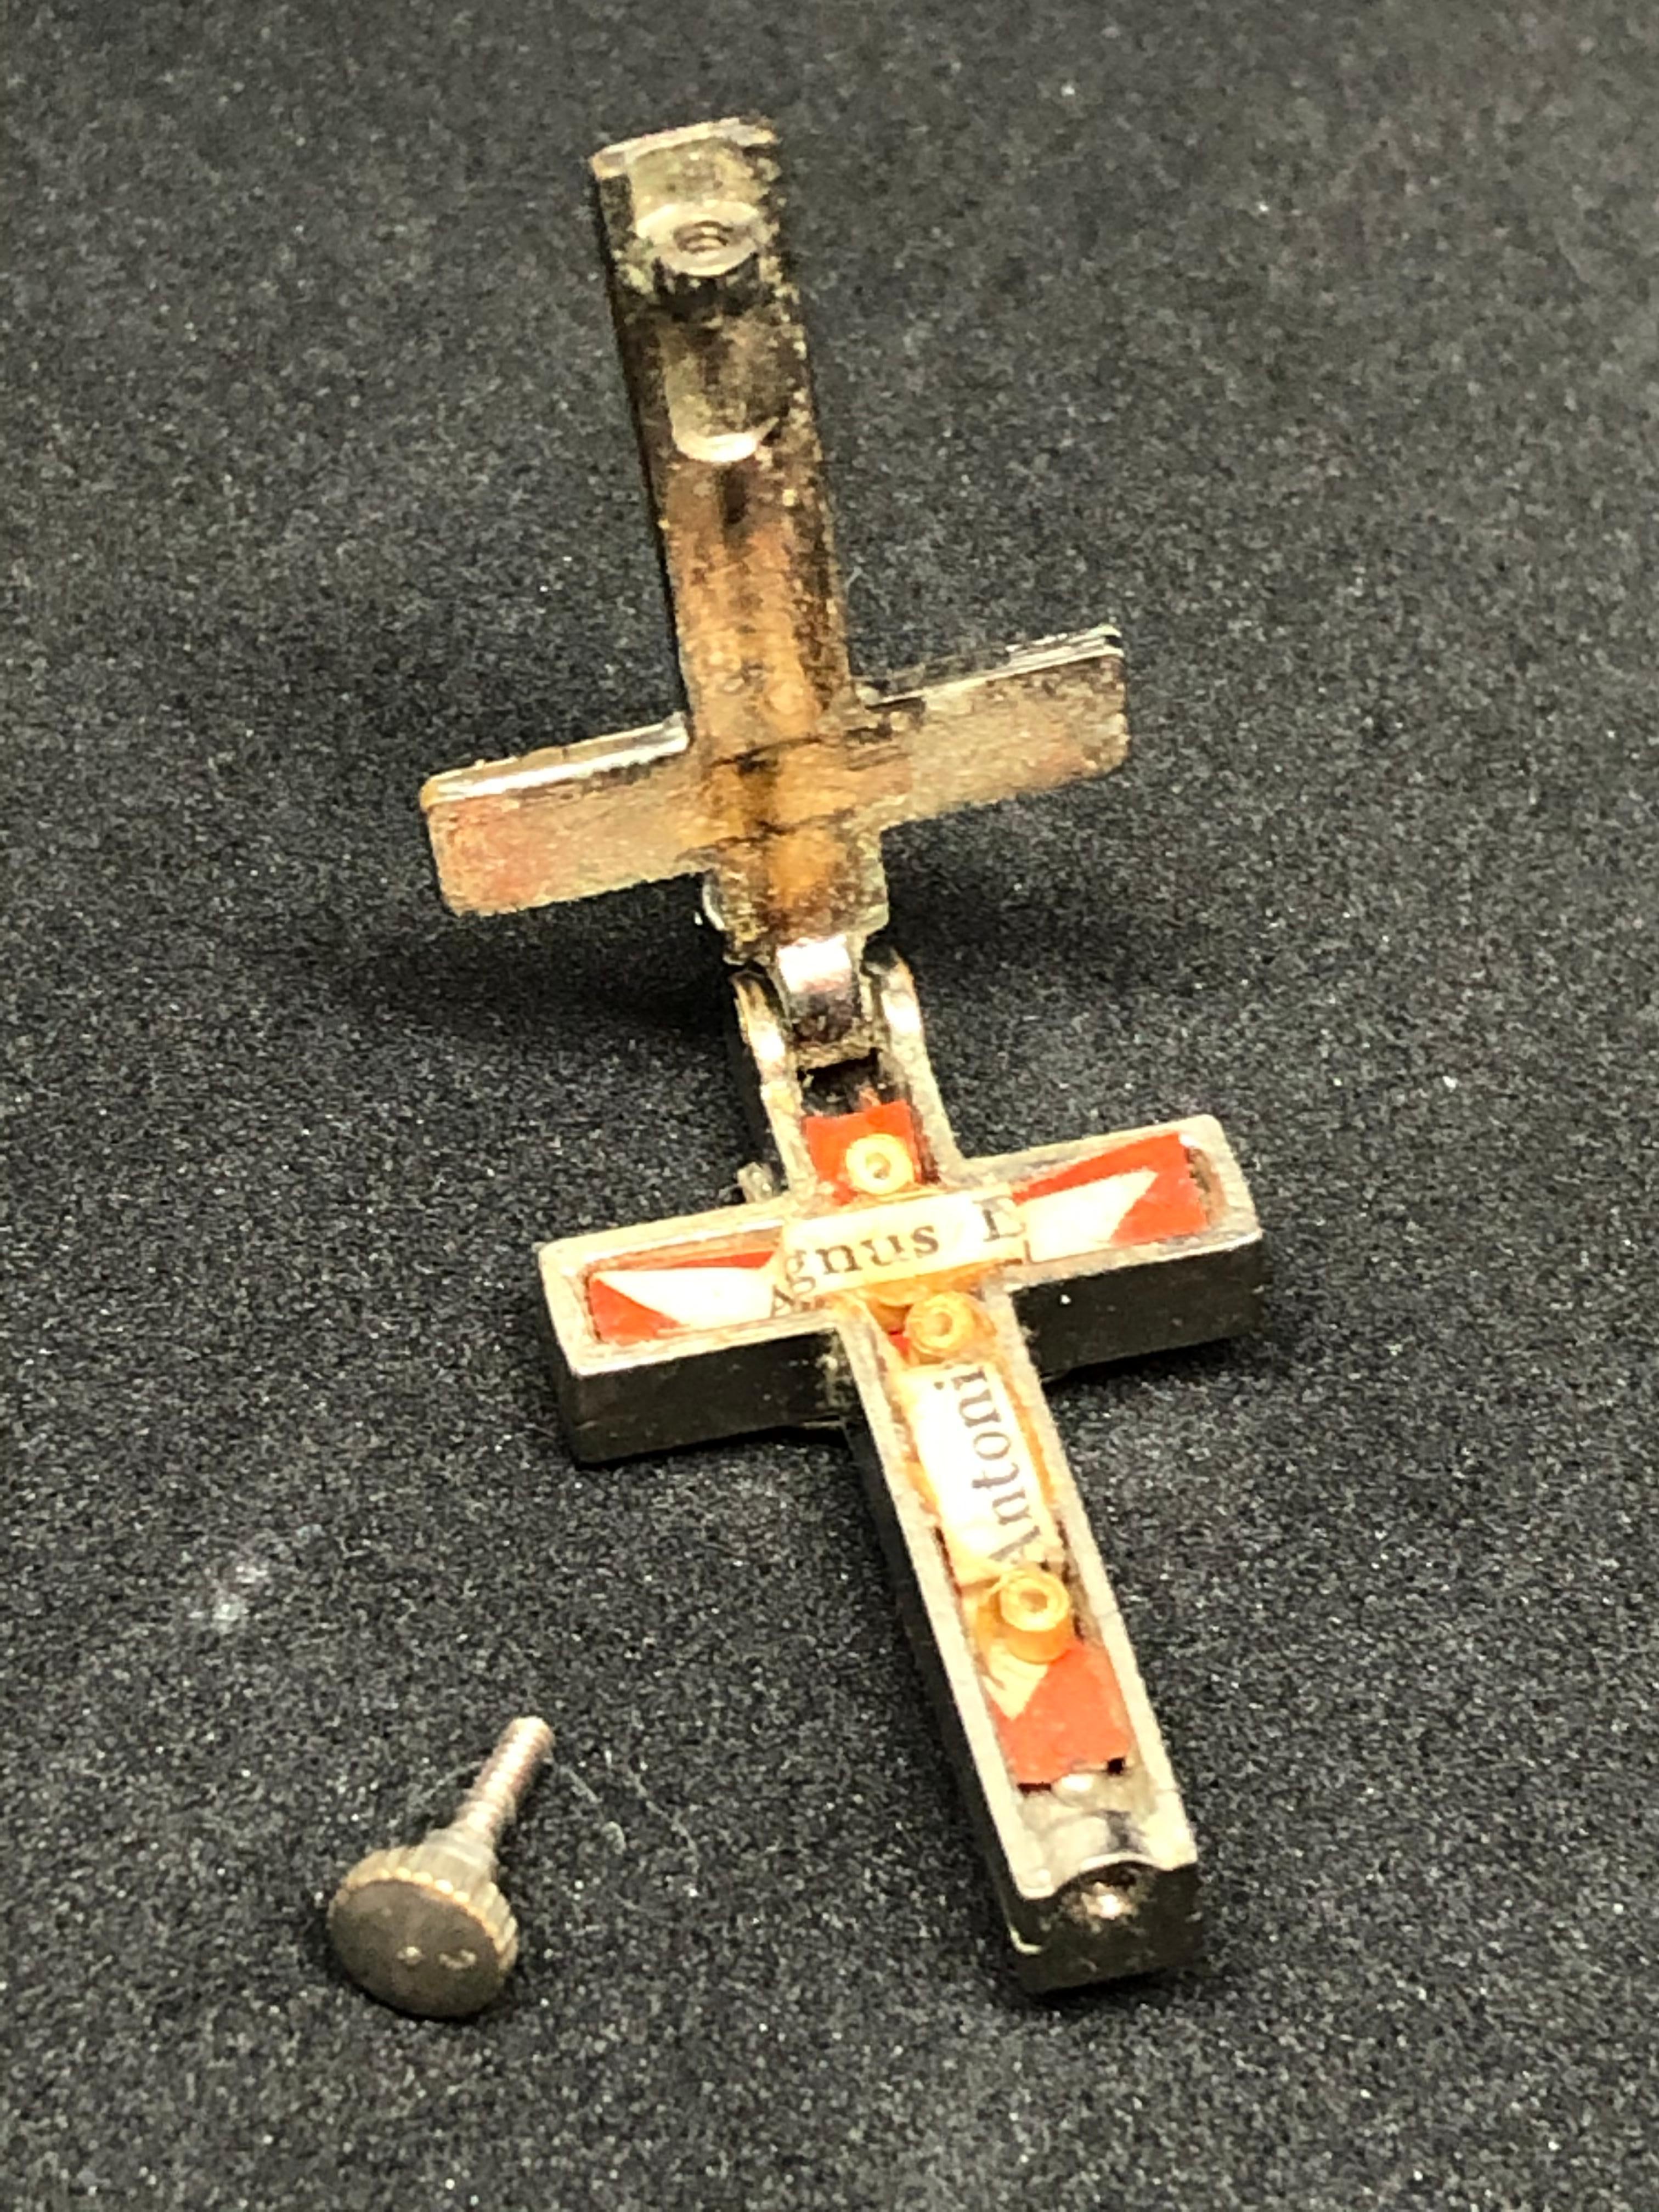 Mid-20th Century Vintage Catholic Reliquary Box Crucifix Pendant Relics of Agnus Dei and Antonius